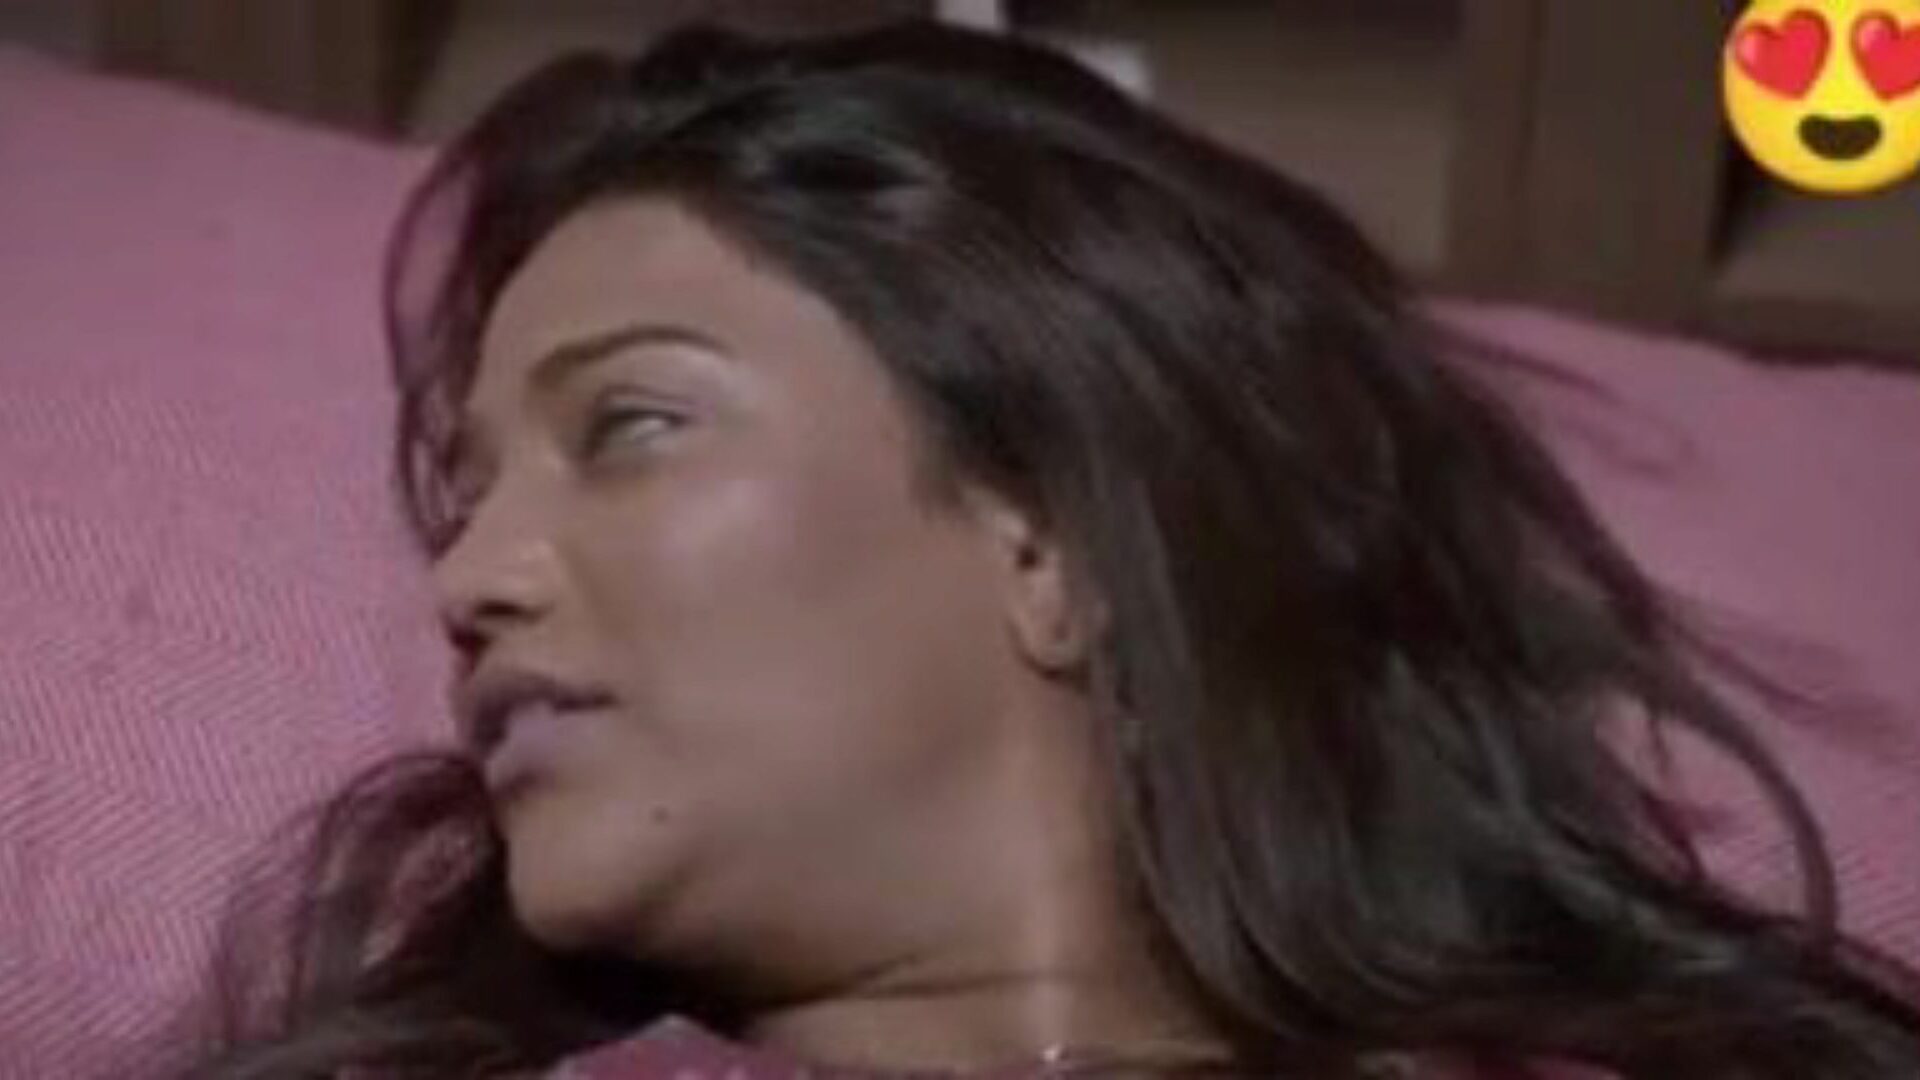 sexo duplo com saree dhamaka, pornografia indiana gratuita da: xhamster assistir filme de sexo duplo com saree dhamaka no xhamster, o enorme canal de recursos da web com toneladas de novas cenas de filmes de pornografia hindi e xxx de sexo indiano gratuito